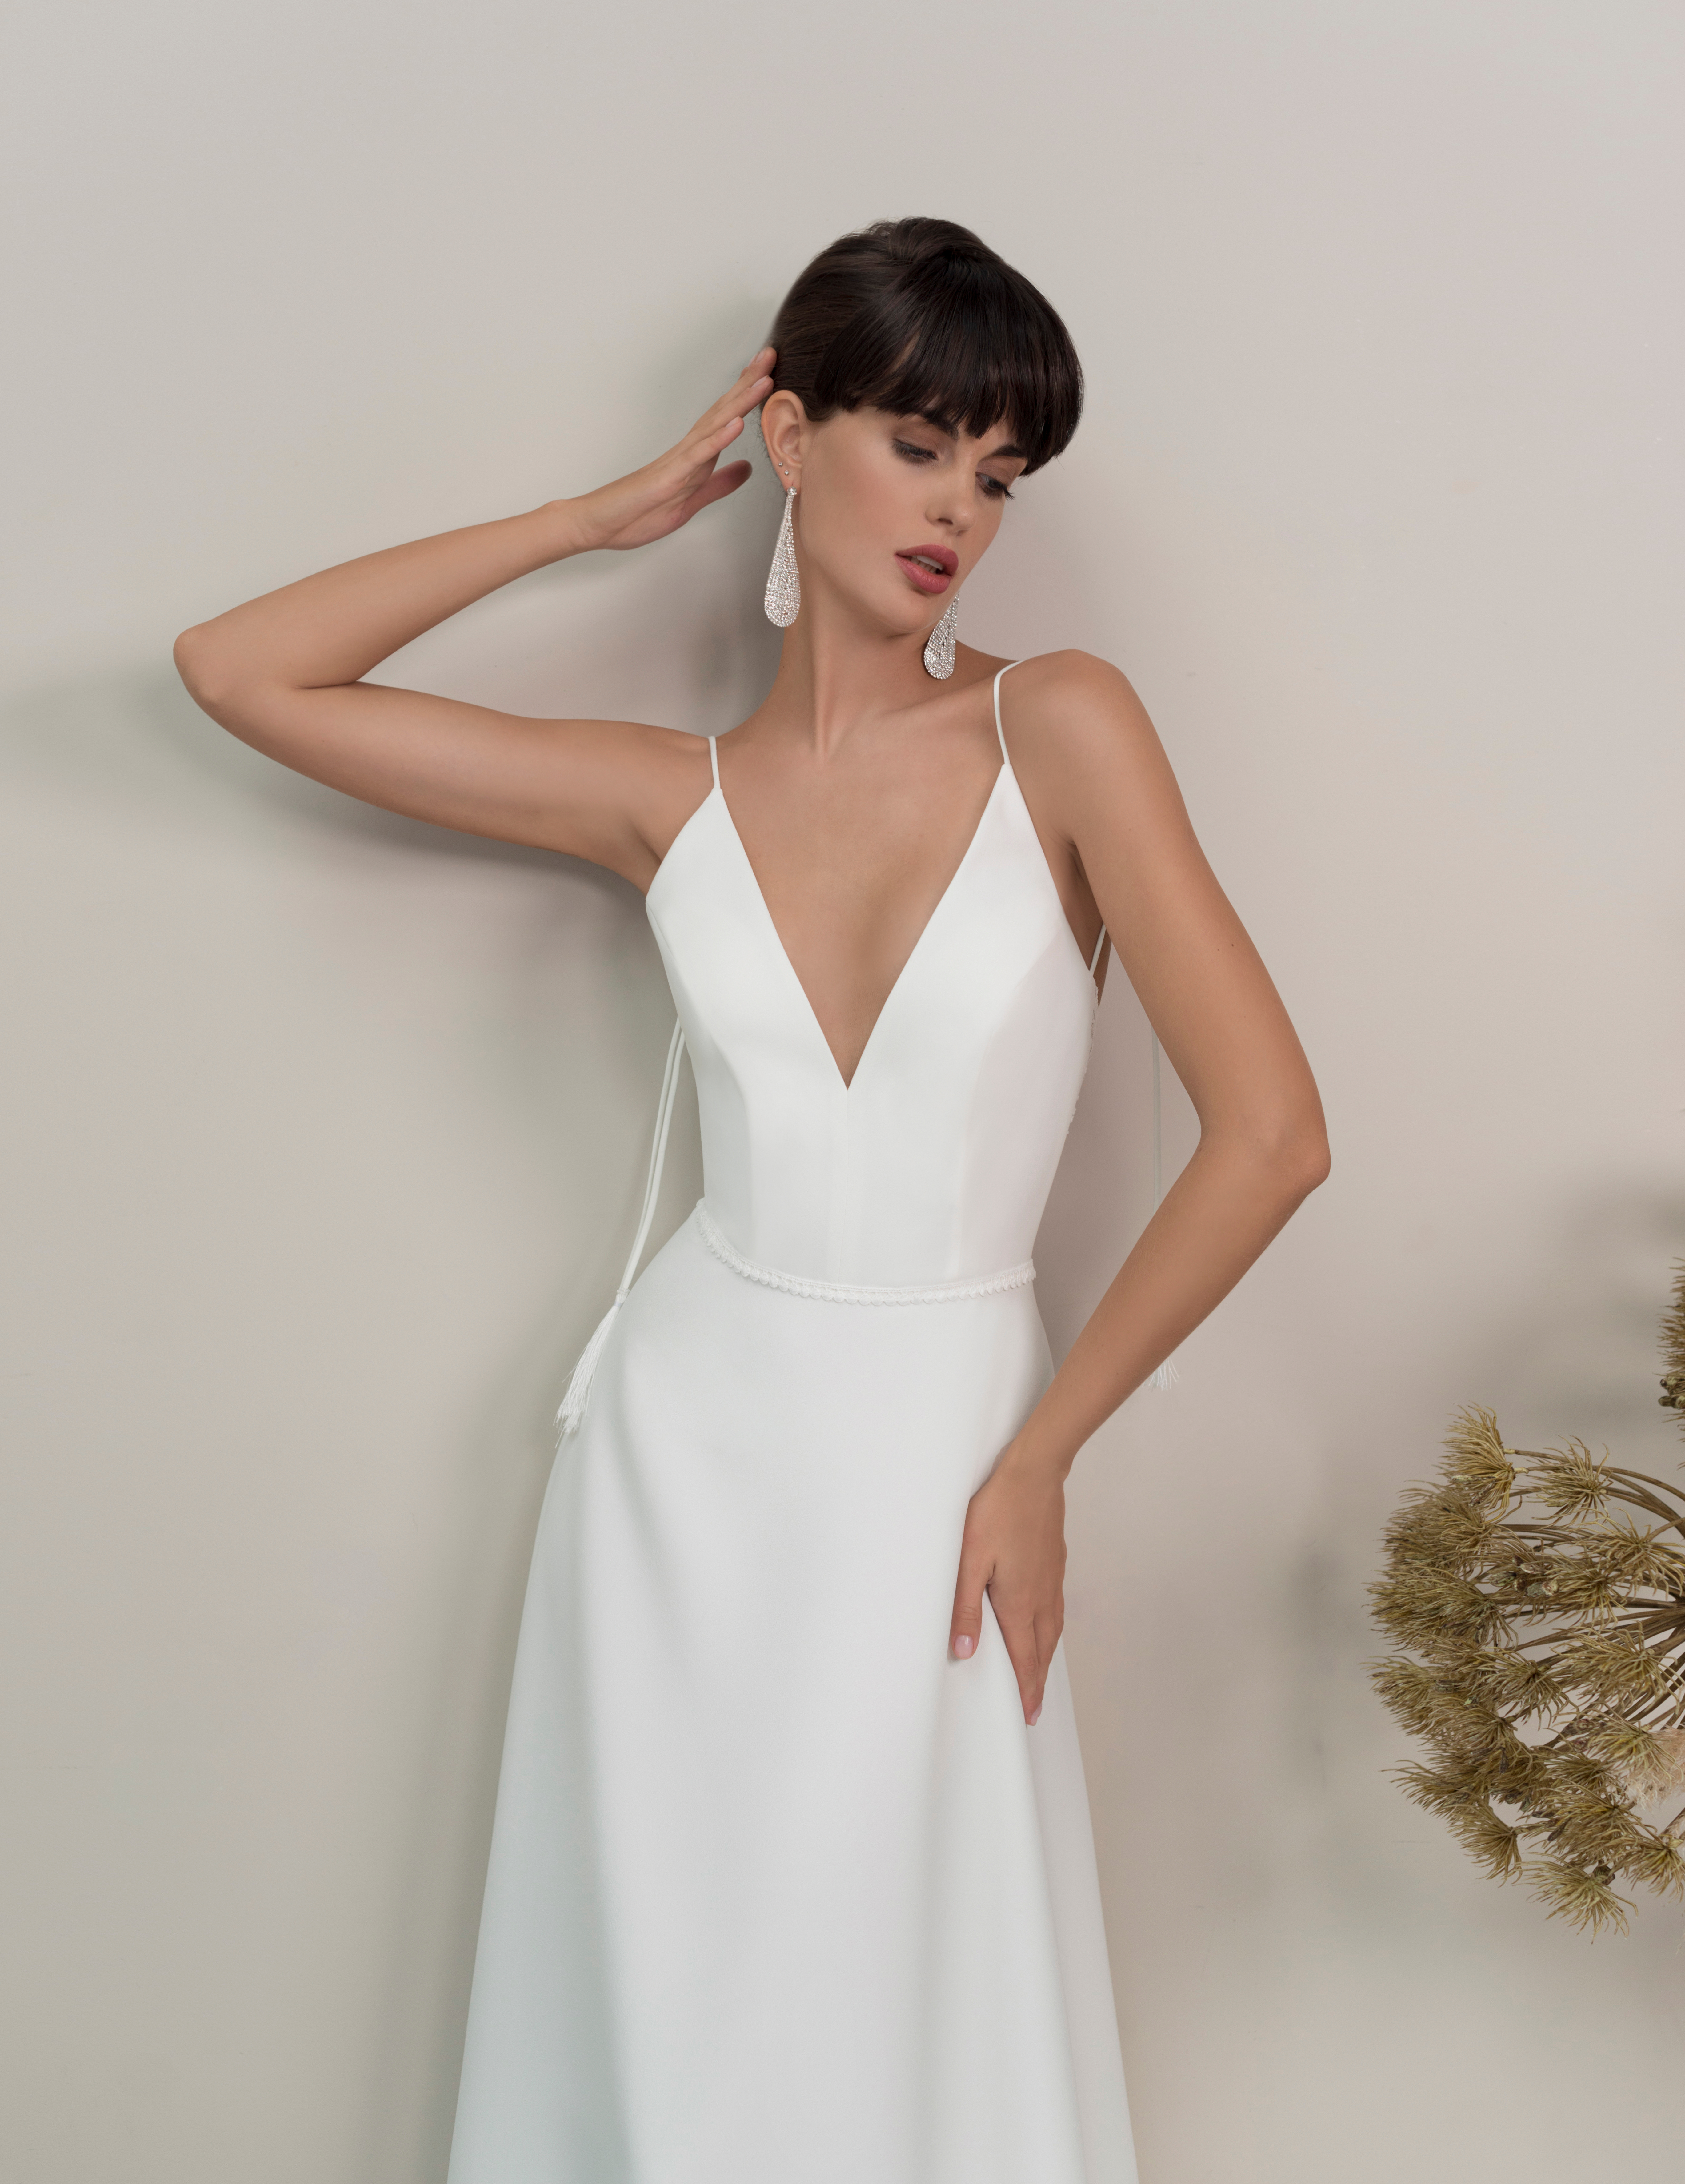 Купить свадебное платье «Фуджи» Мэрри Марк из коллекции 2022 года в Москве